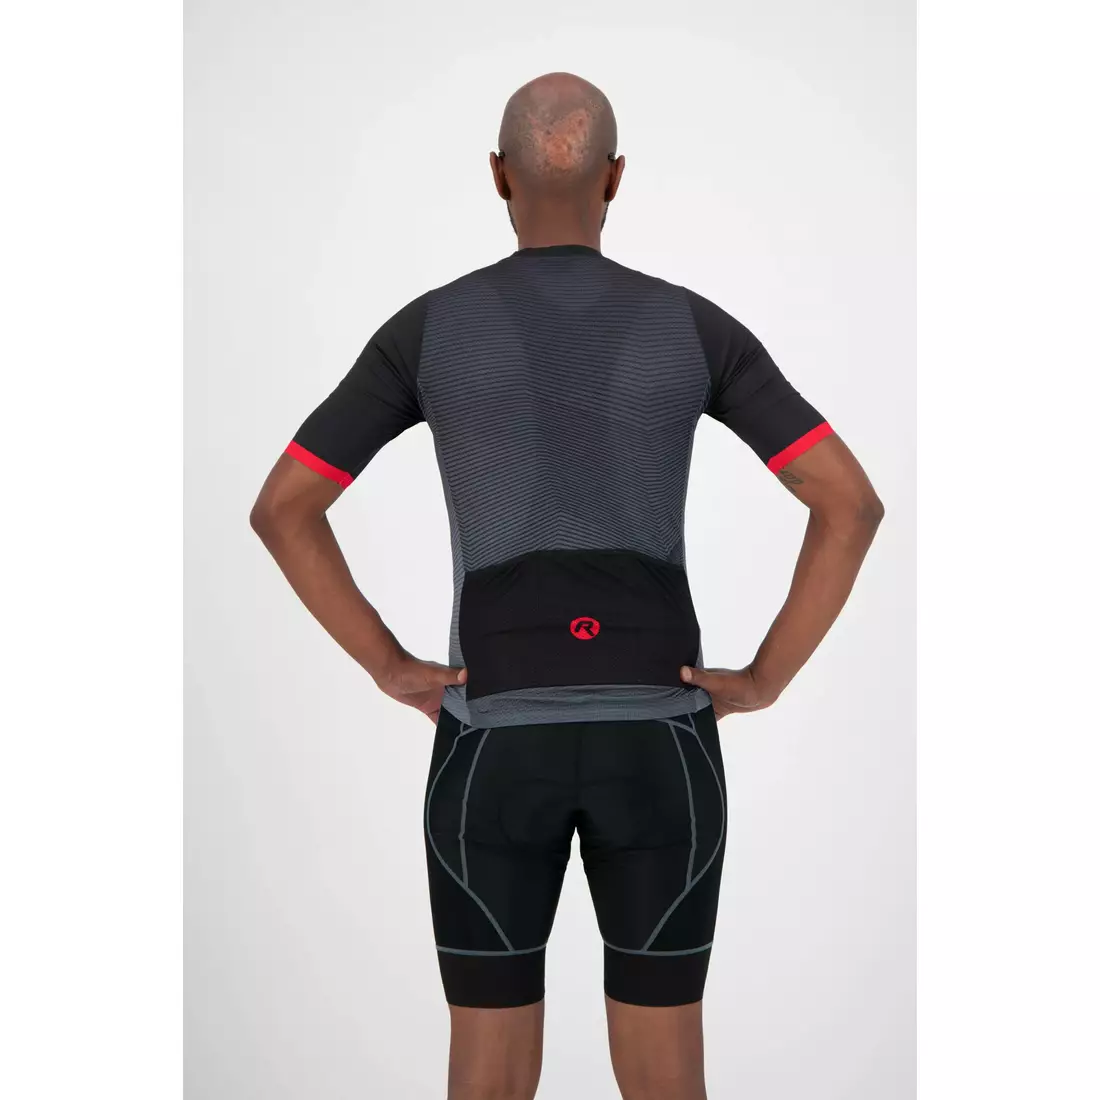 ROGELLI tricou pentru bărbați pentru biciclete VALOR black/red 001.038